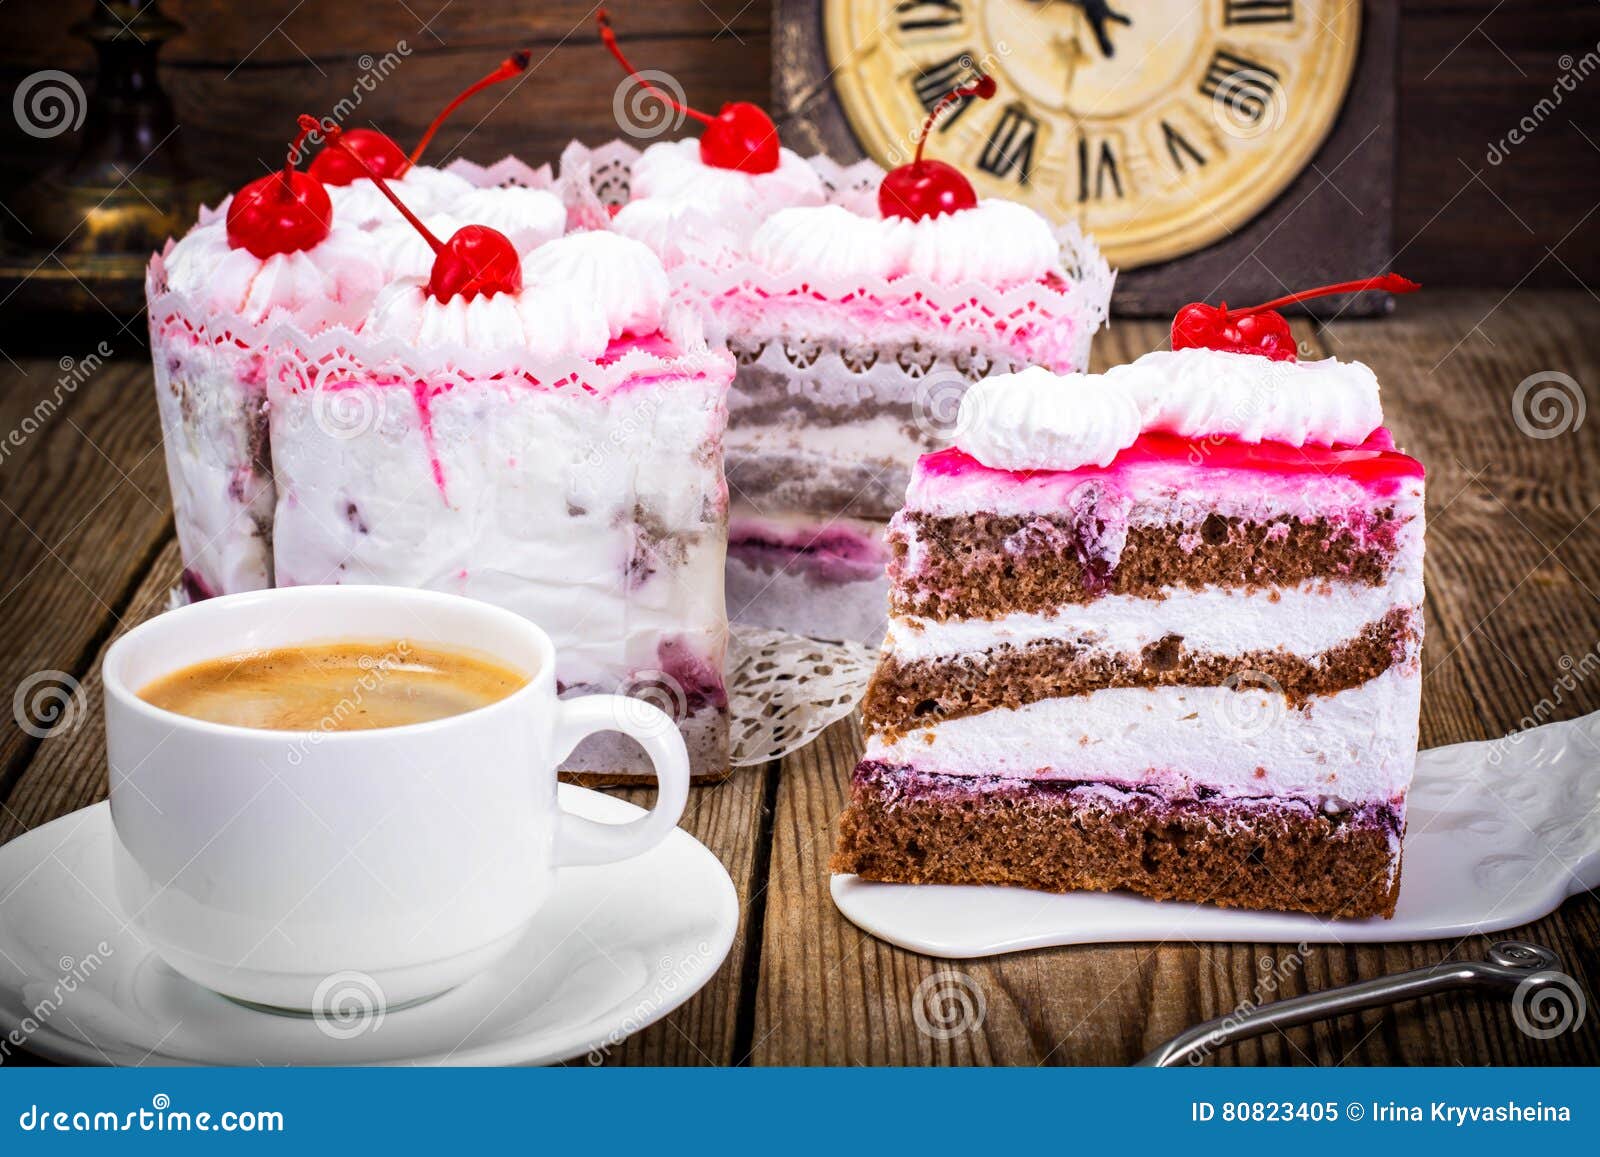 Tasse Kaffee, Kuchen Mit Sahne Und Kirsche Stockbild ...